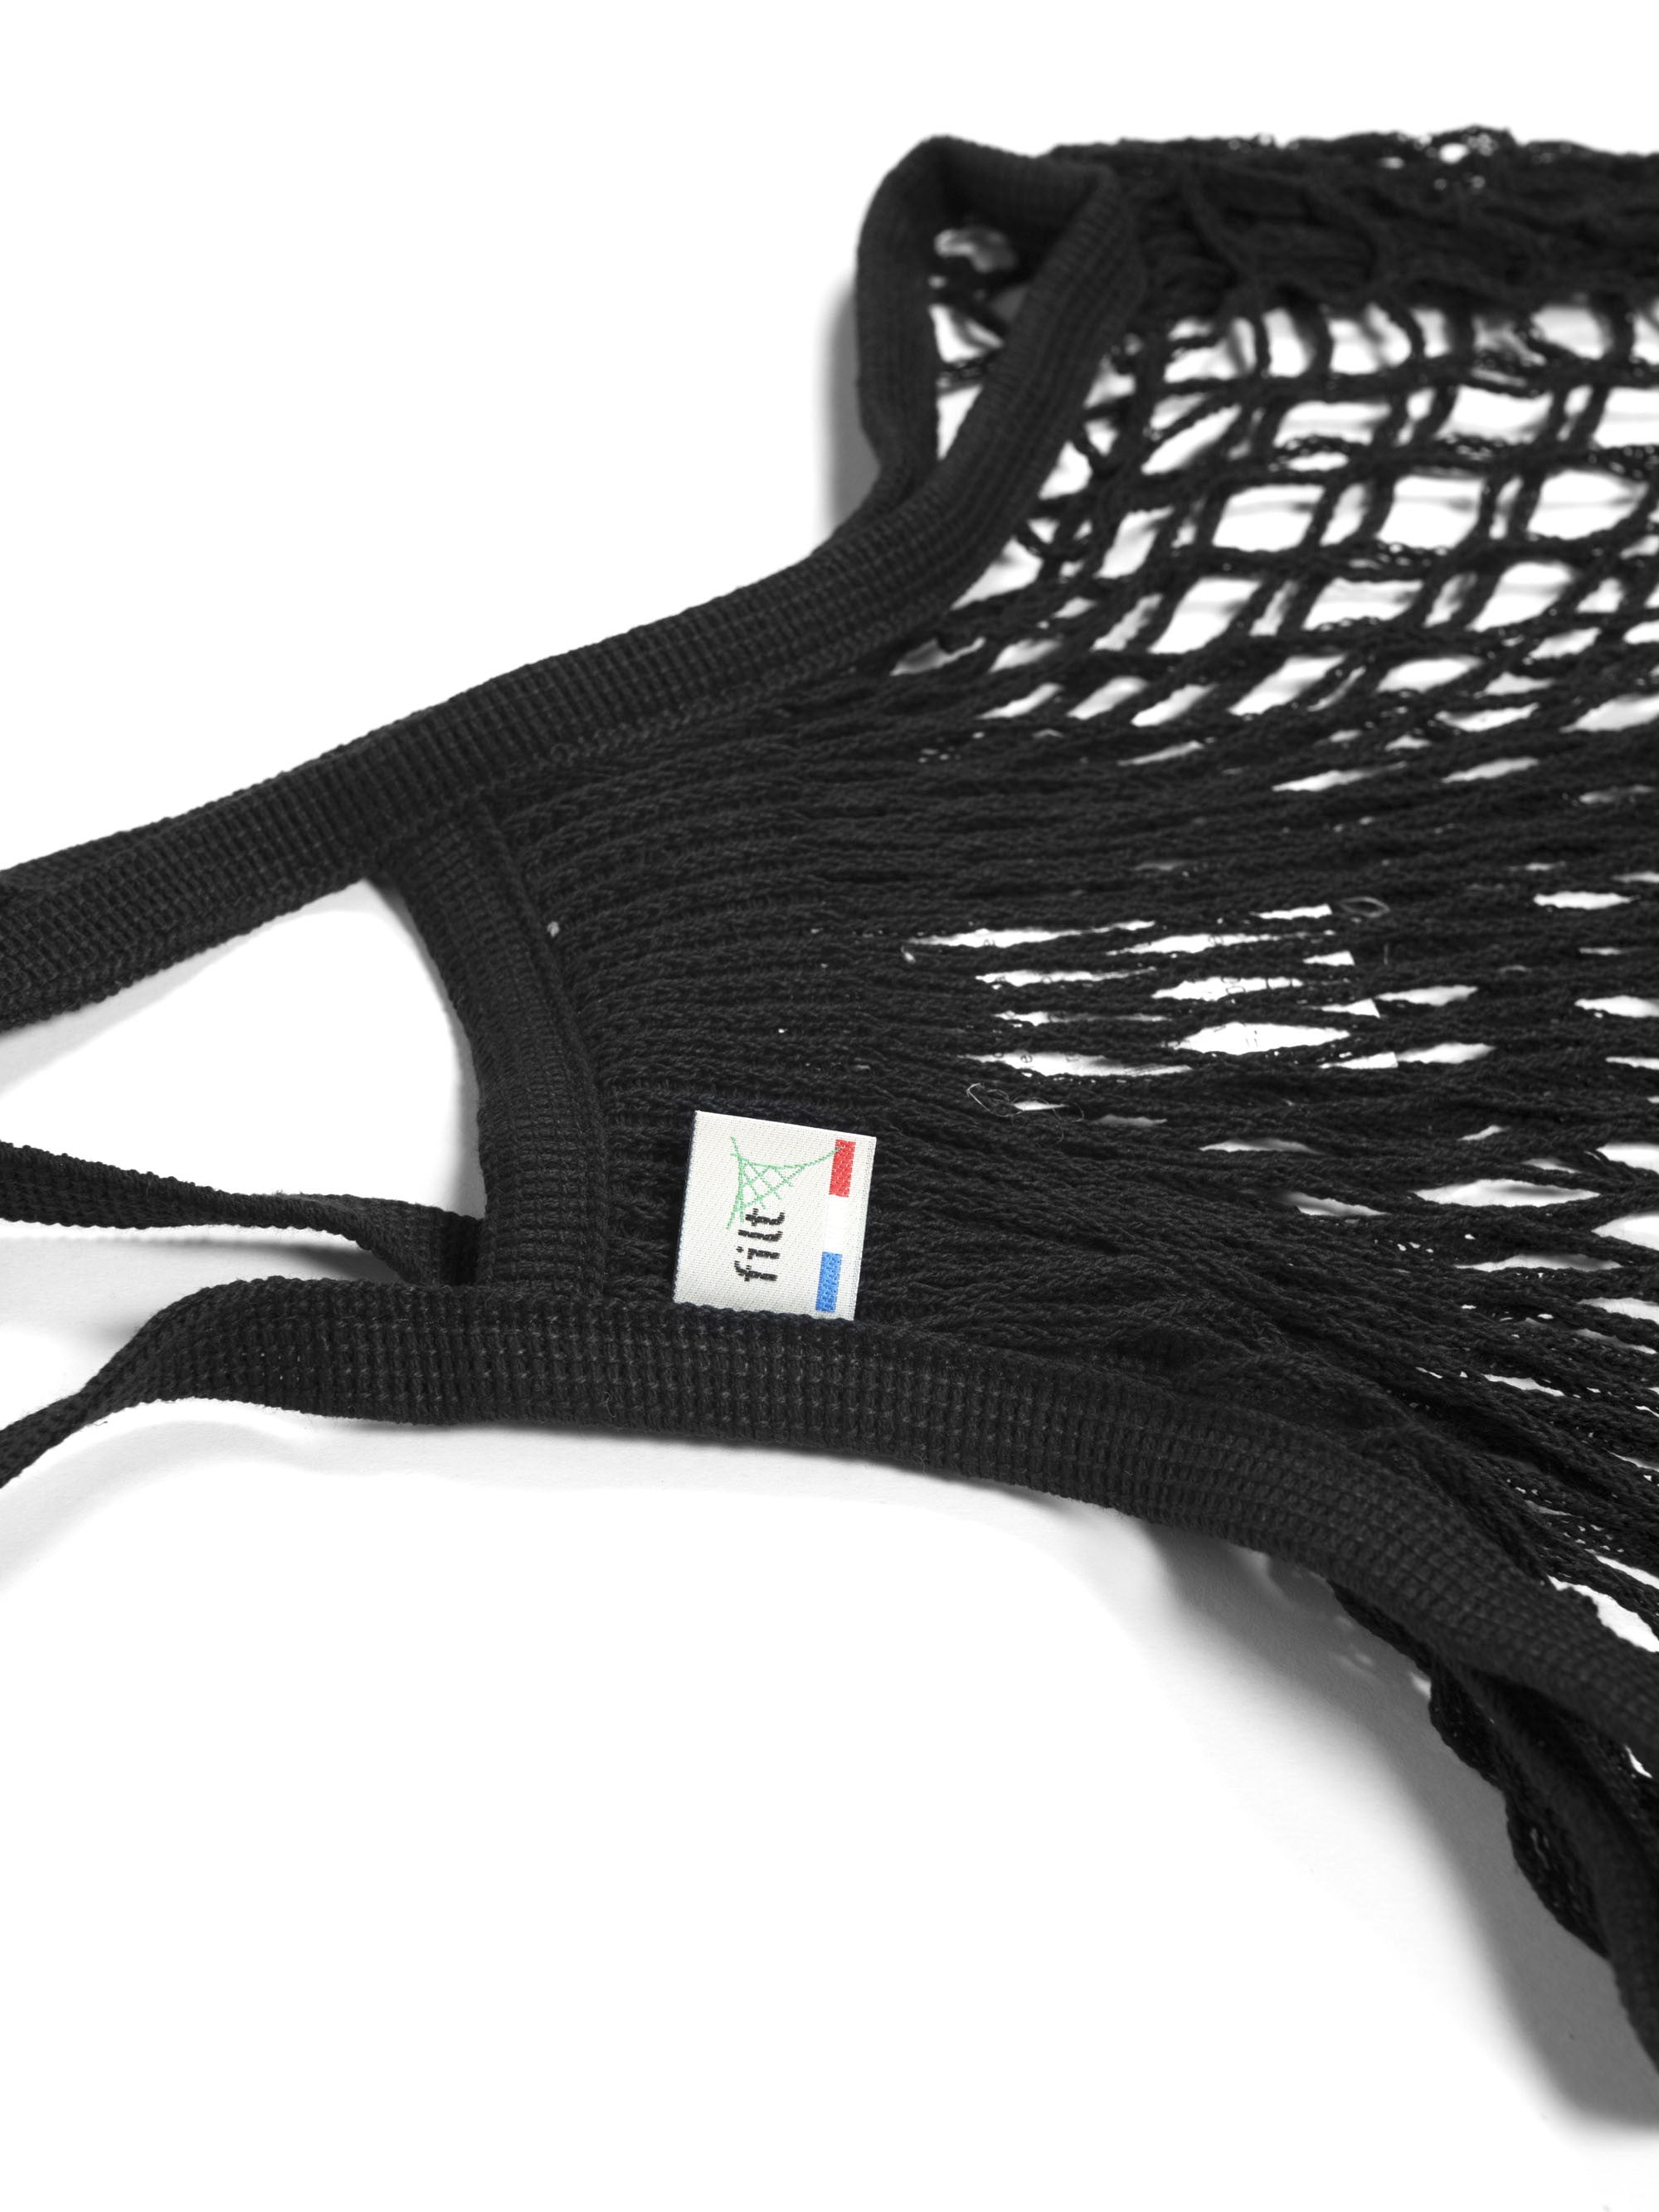 Filt Medium Bag in Black Bag Filt Bags Brand_Filt Shopping Bags Textiles_Shoppers 2200-220BLKMe_Medium_Black_B